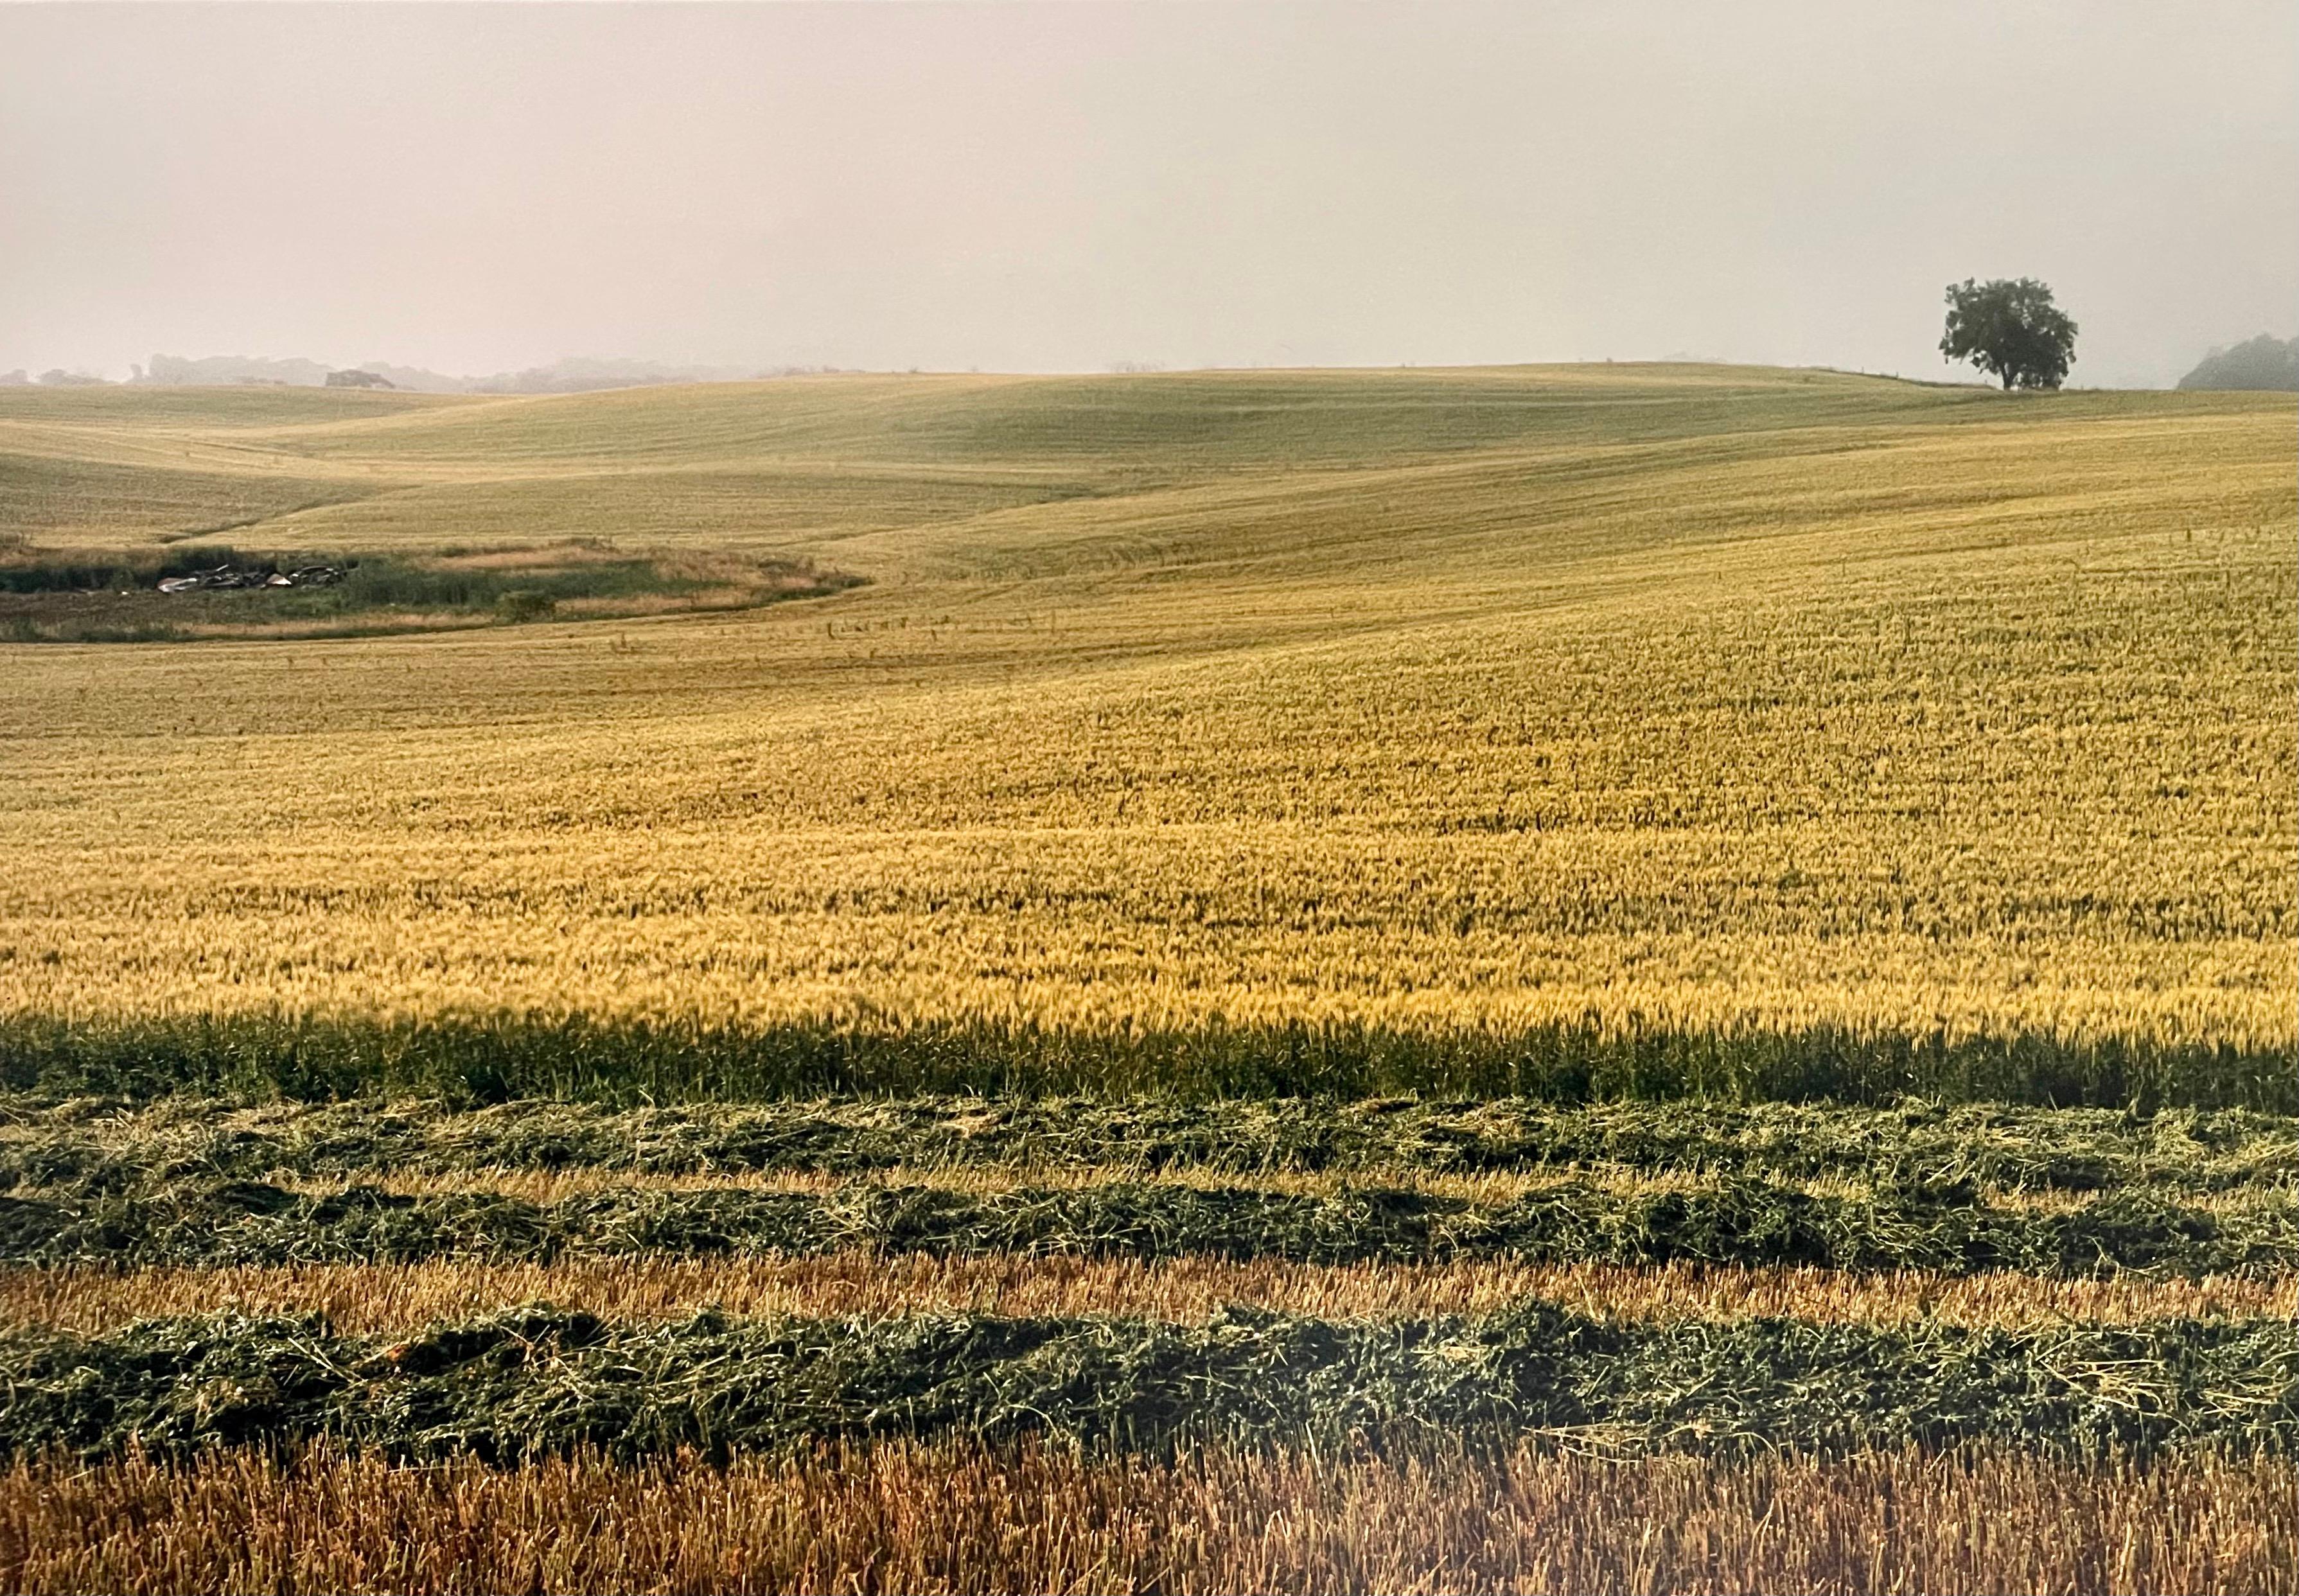 Homestead du canton d'Everts, été 1992
Fabuleuse photographie de paysage américain d'une scène de paysage rural. 
d'une petite édition de 20 exemplaires signés à la main
Tirage chromogène grand format sur papier professionnel Kodak
Les feuilles font